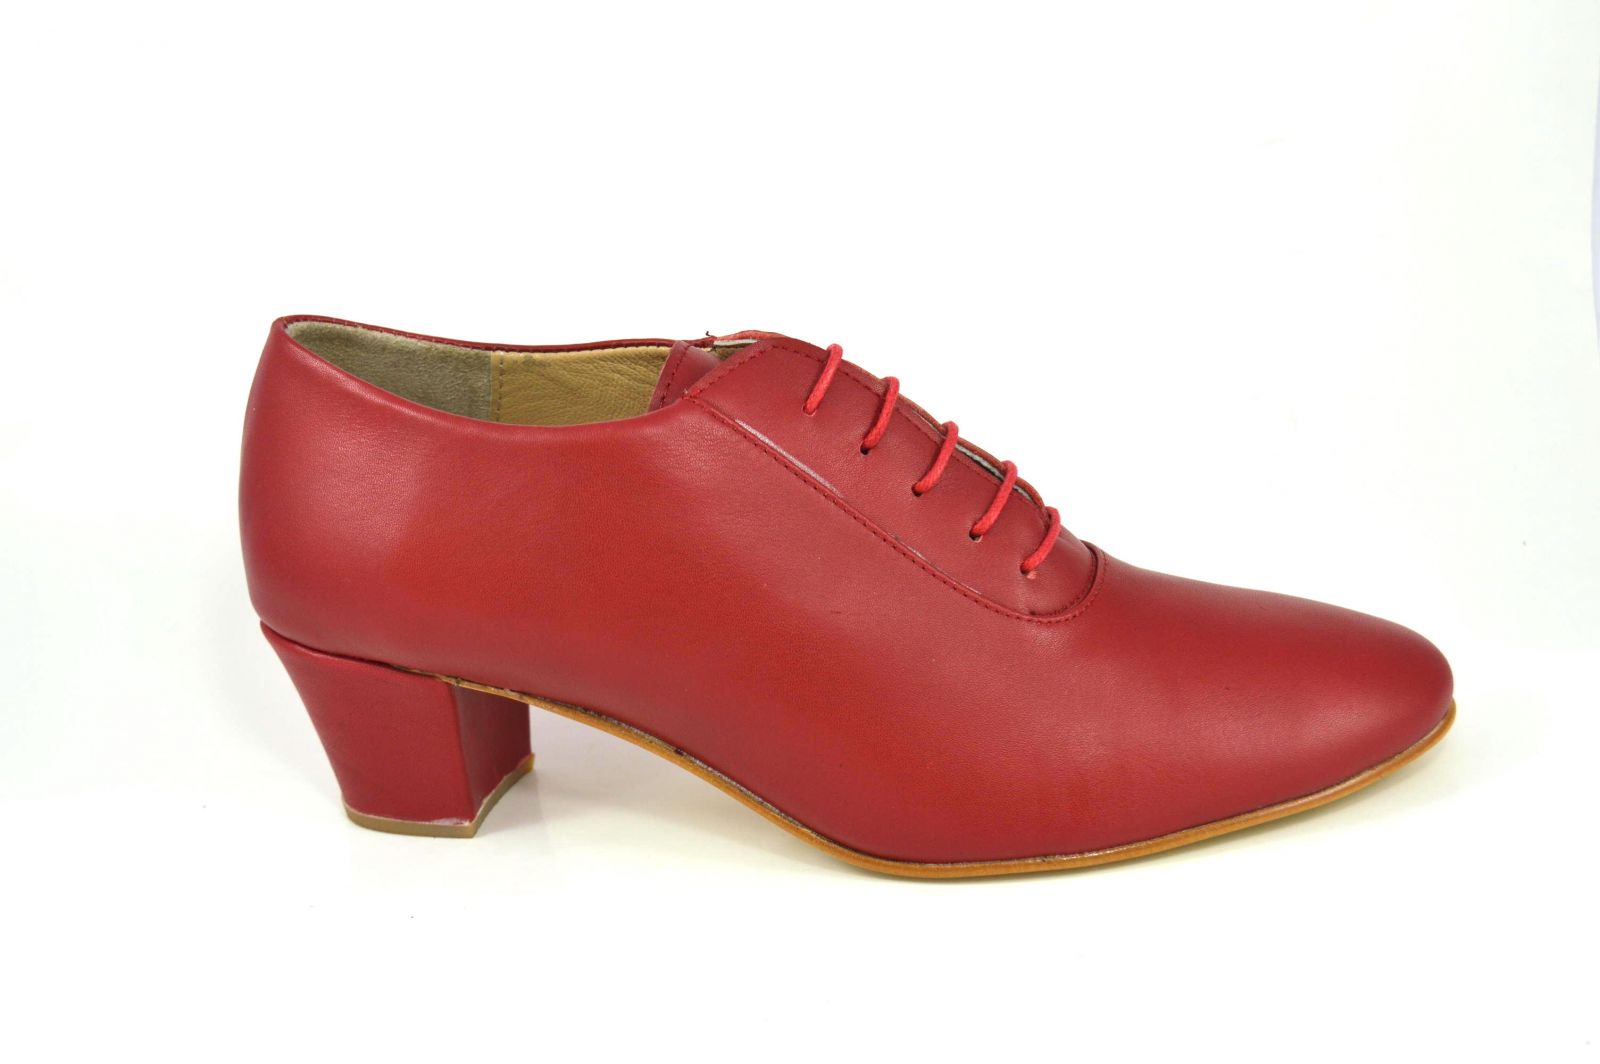 Γυναικείο παπούτσι tango κλειστού τύπου από πολύ μαλακό κόκκινο δέρμα